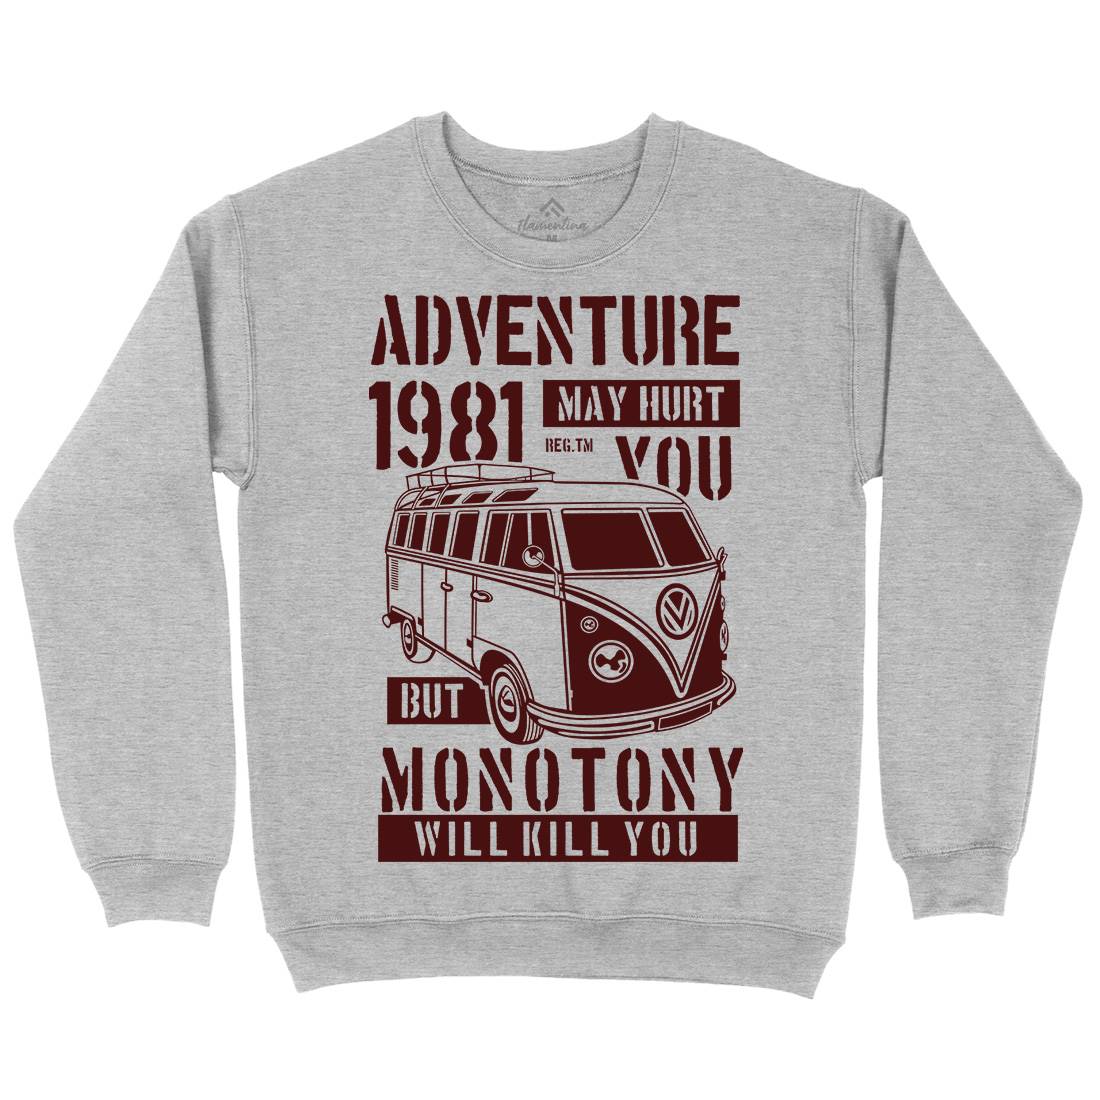 Adventure May Hurt You Kids Crew Neck Sweatshirt Nature B175